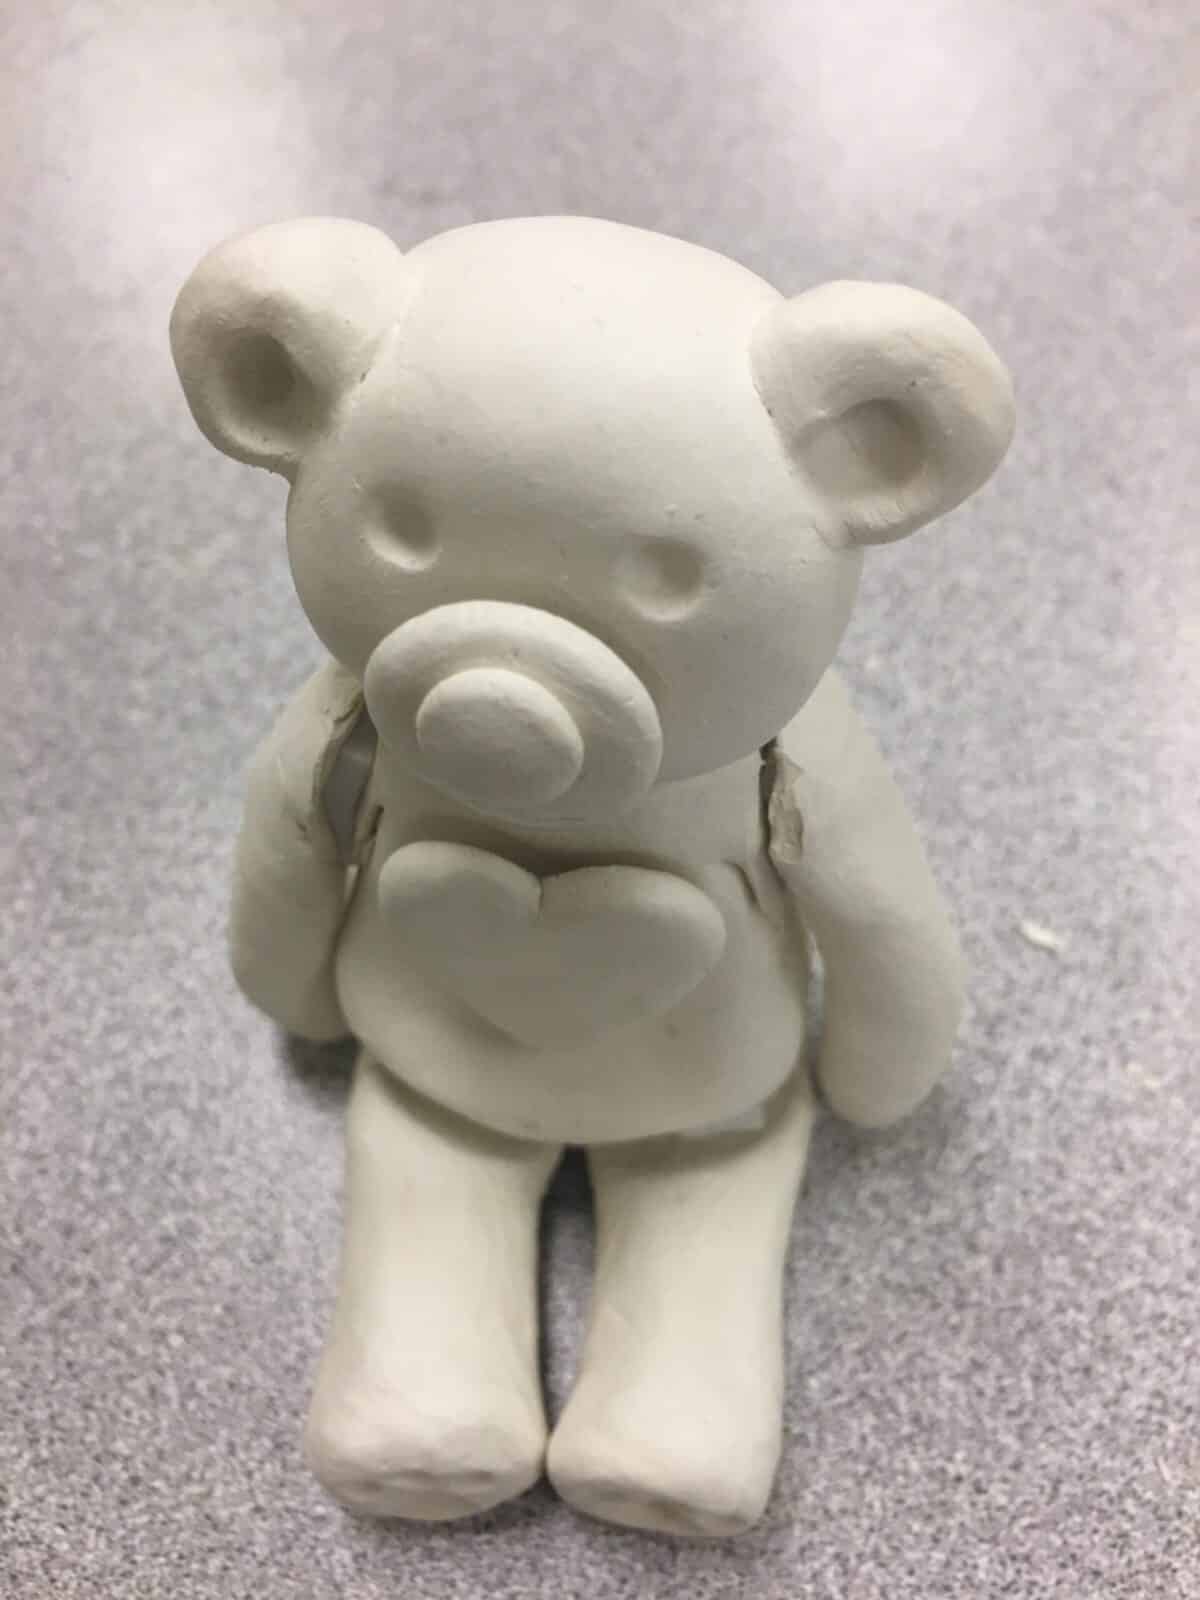 A teddy bear clay